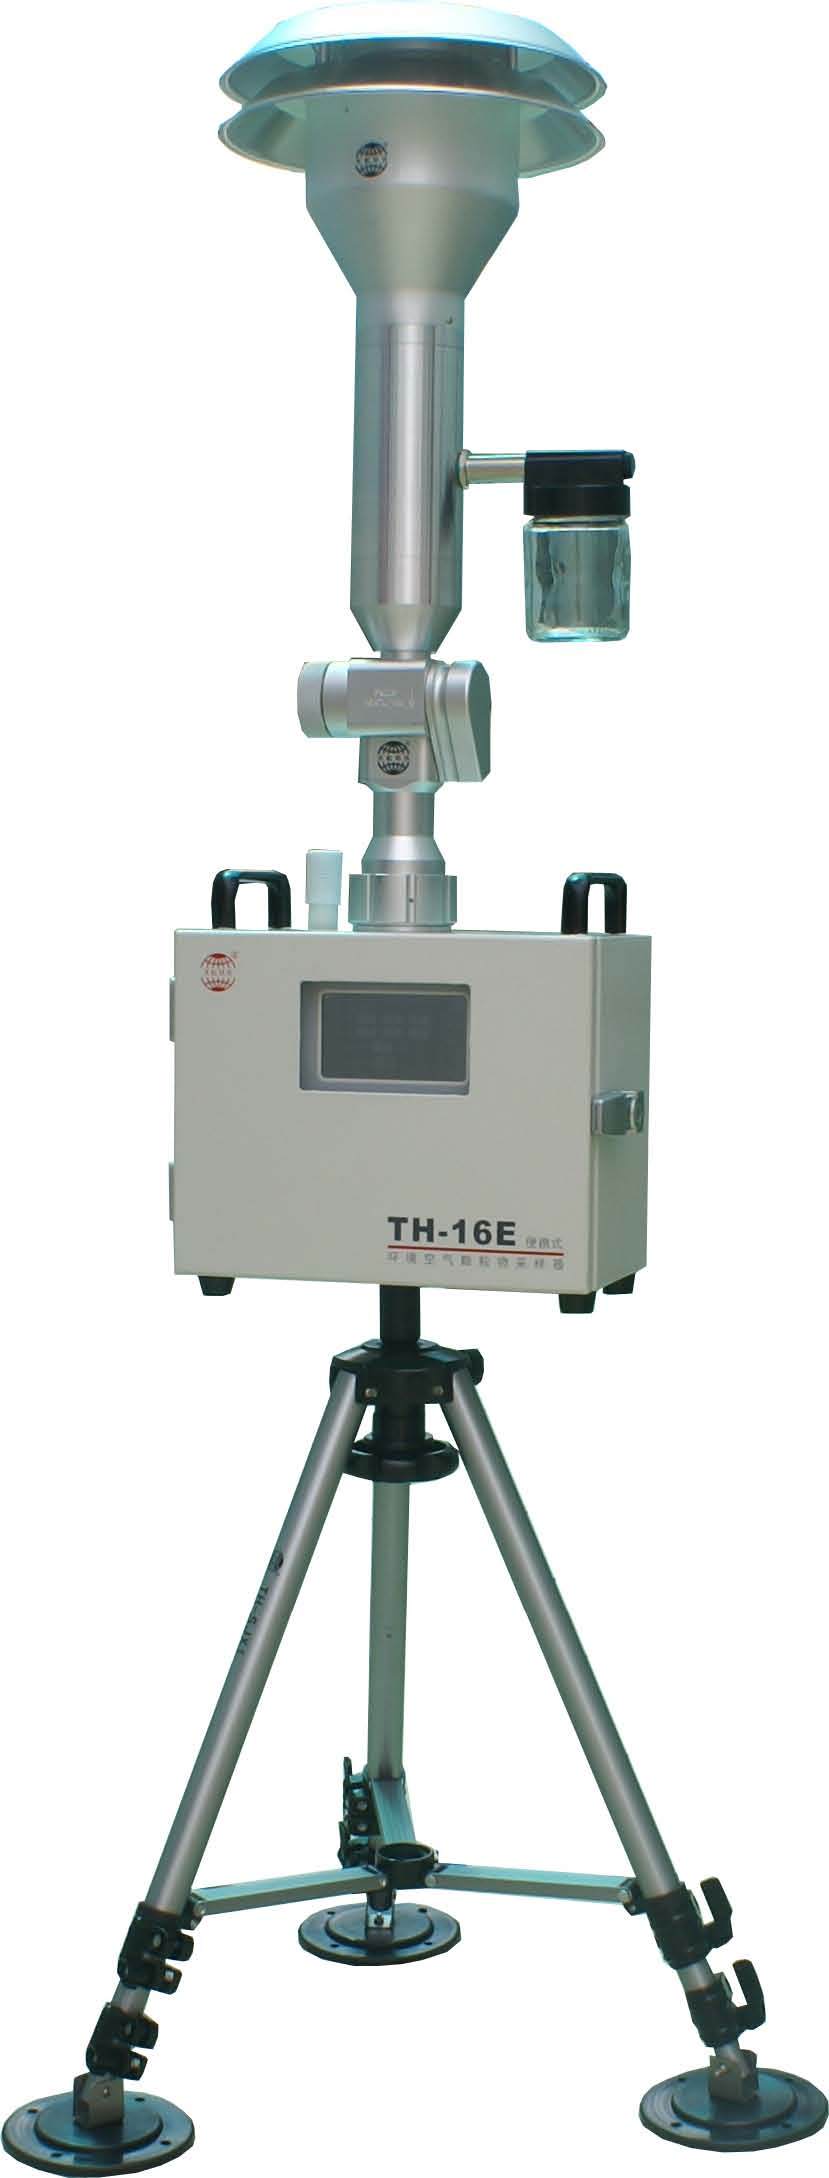 TH-16E (便携式)环境空气颗粒物采样器